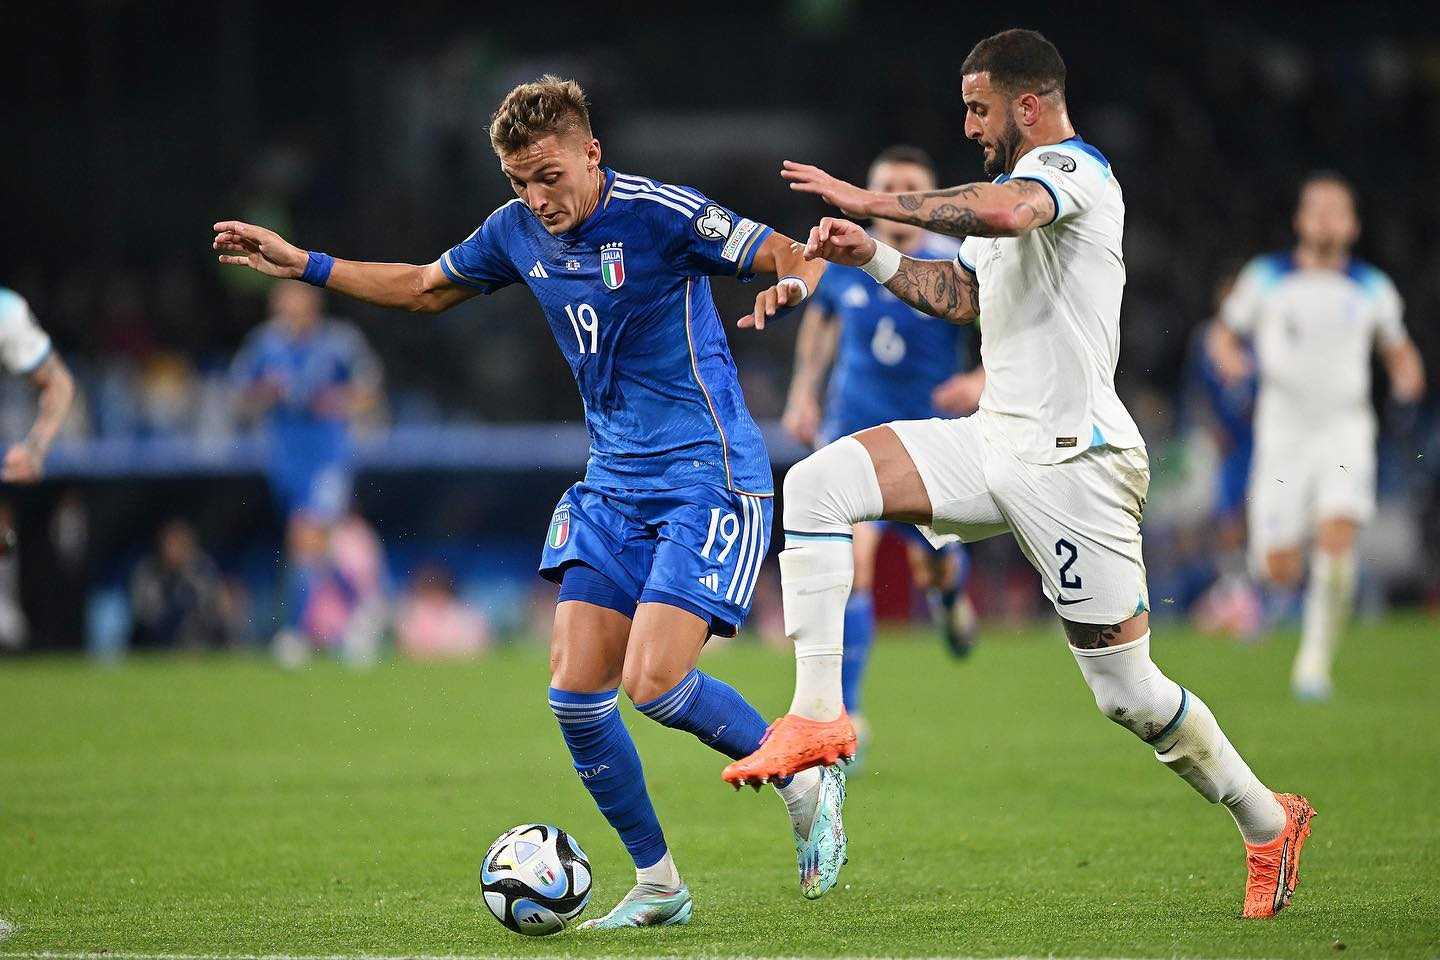 Malta-Italia (0-2), Mancini: “Retegui goleador, convocare altri oriundi è una possibilità”